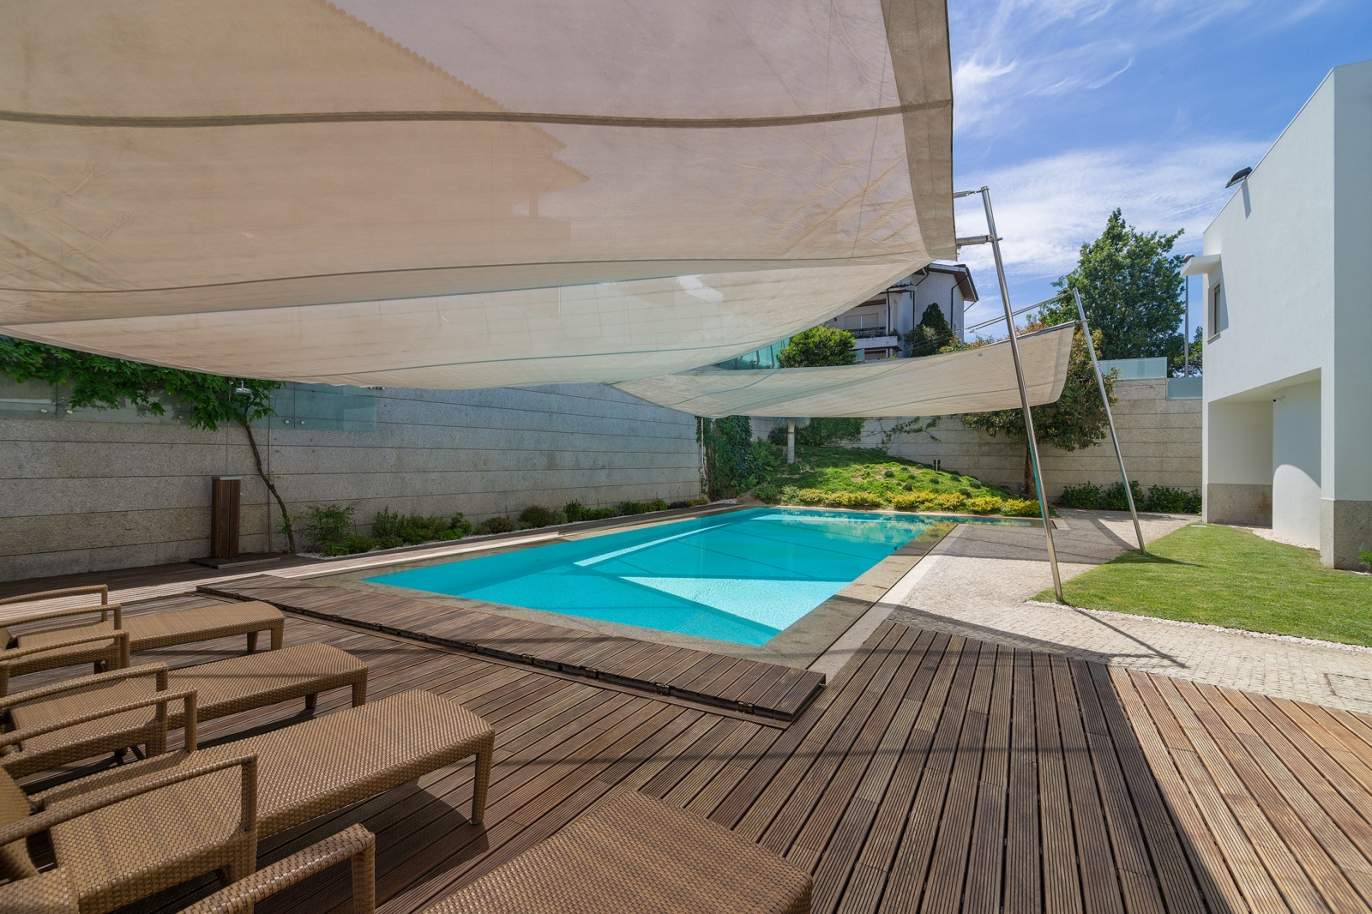 Moradia V3, com piscina e jardim, para venda, na Trofa, Porto _154944